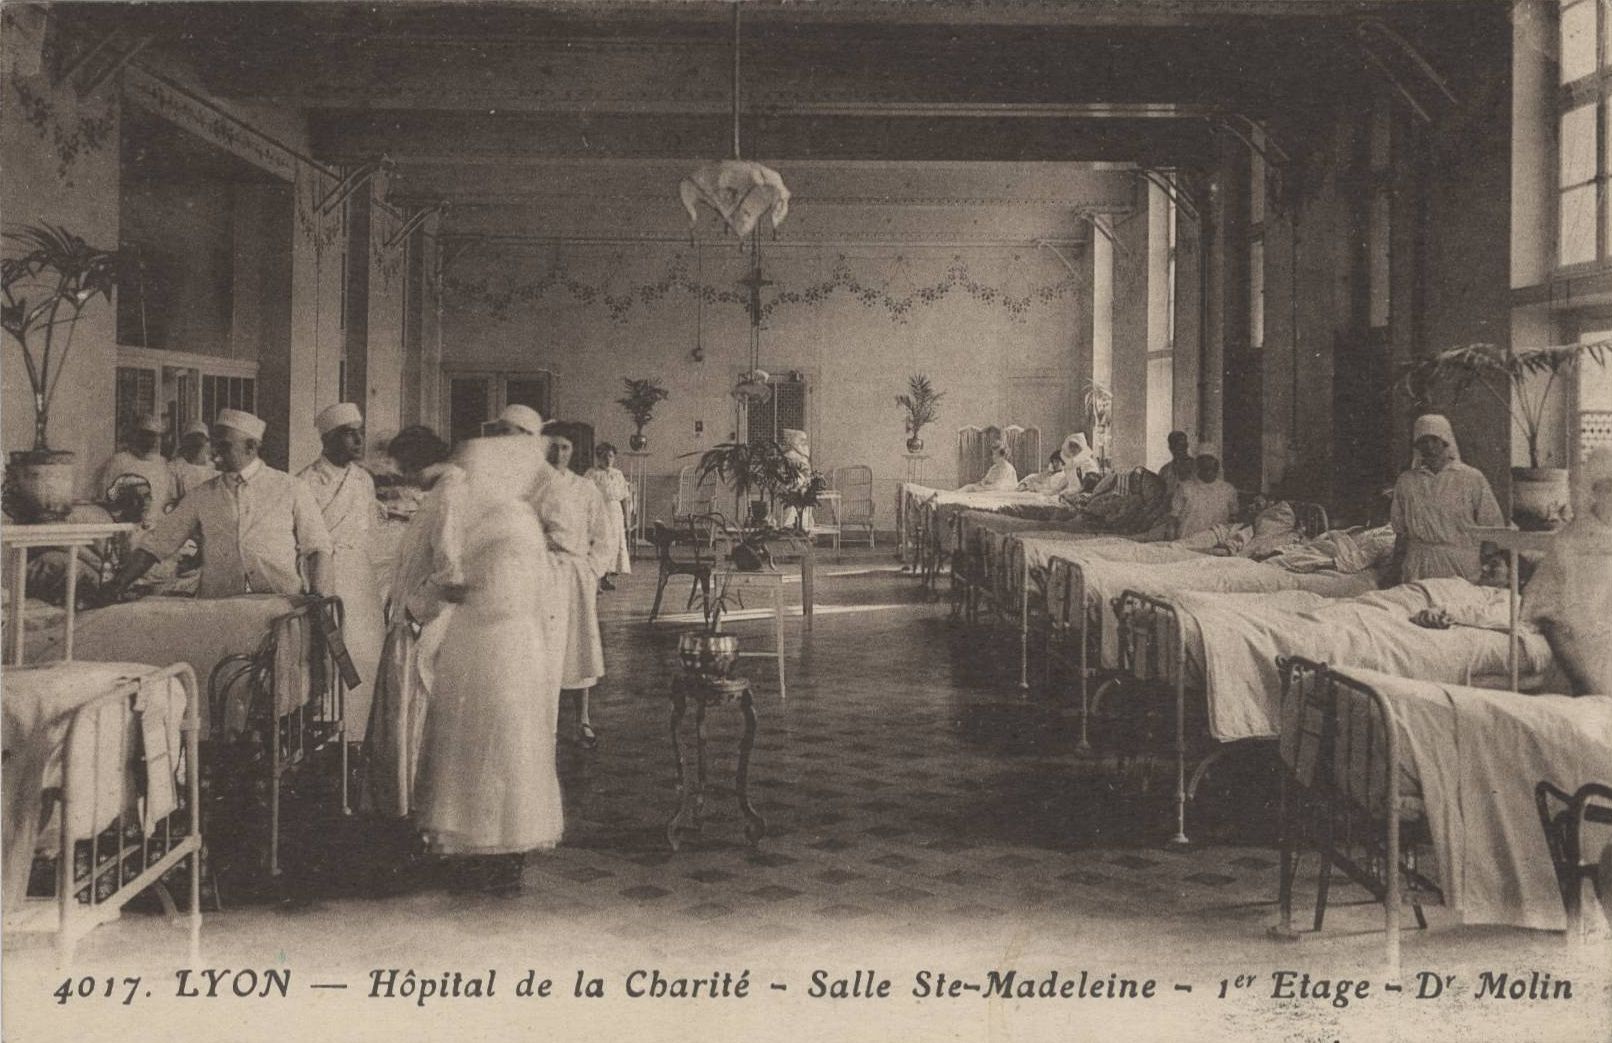 Lyon - Hôpital de la Charité, salle Sainte-Madeleine 1er étage : carte postale NB (vers 1910, cote : 4FI/3523)